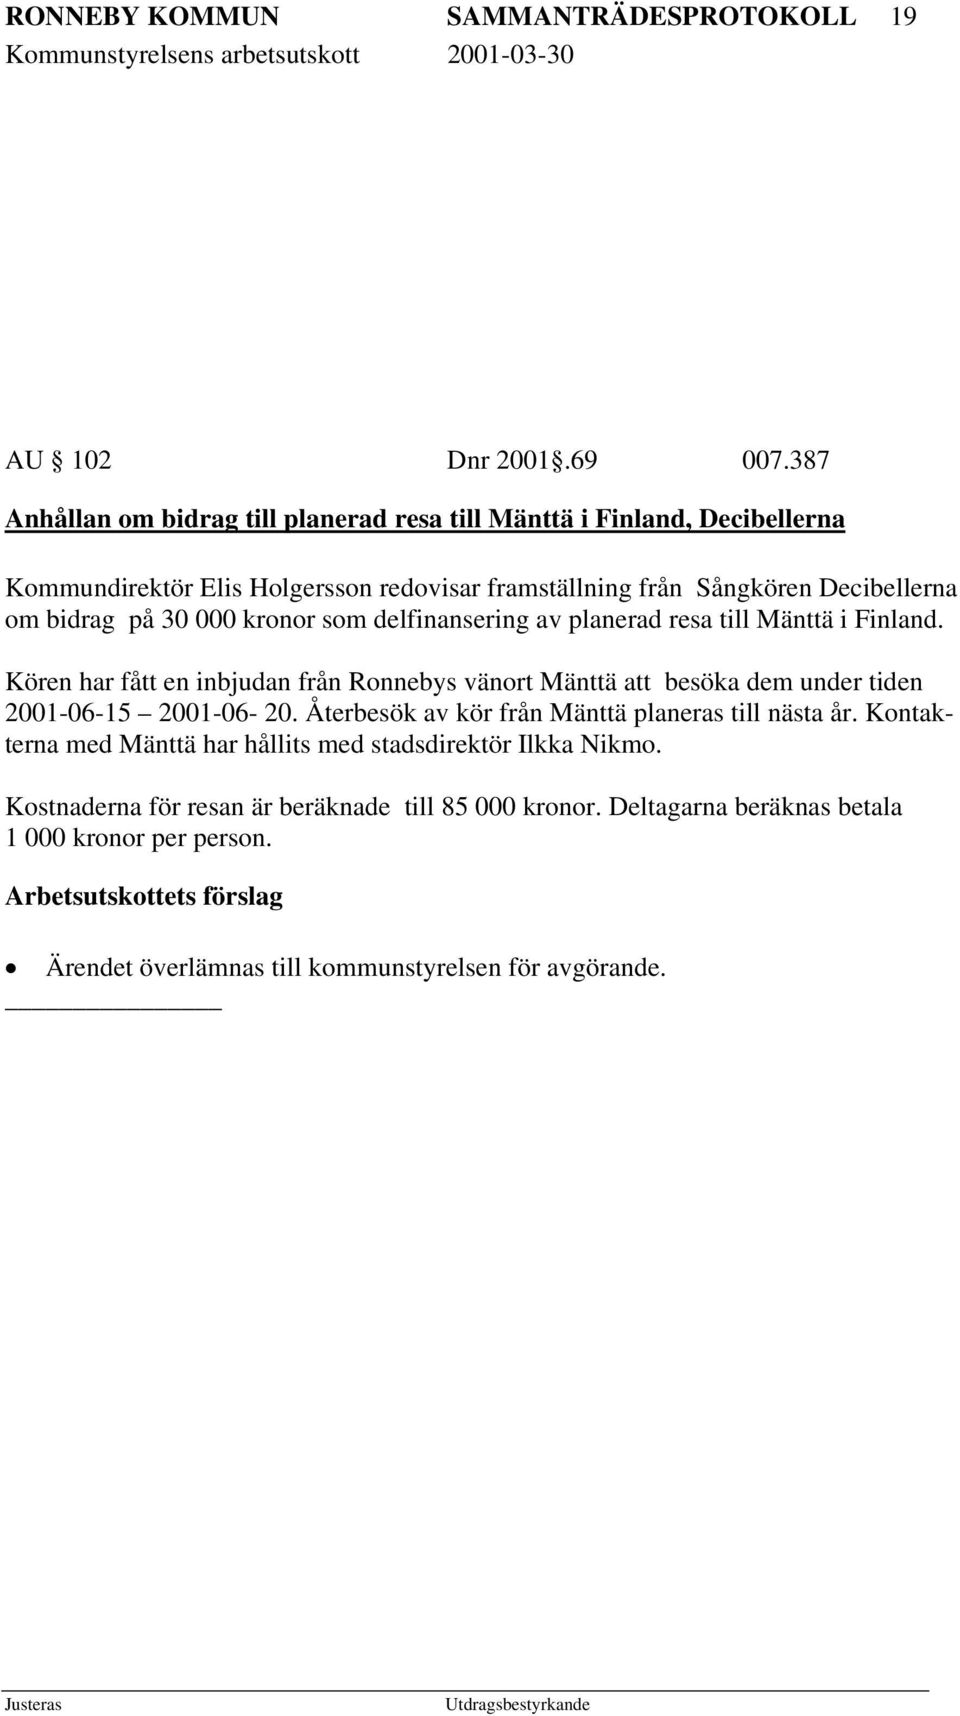 kronor som delfinansering av planerad resa till Mänttä i Finland. Kören har fått en inbjudan från Ronnebys vänort Mänttä att besöka dem under tiden 2001-06-15 2001-06- 20.